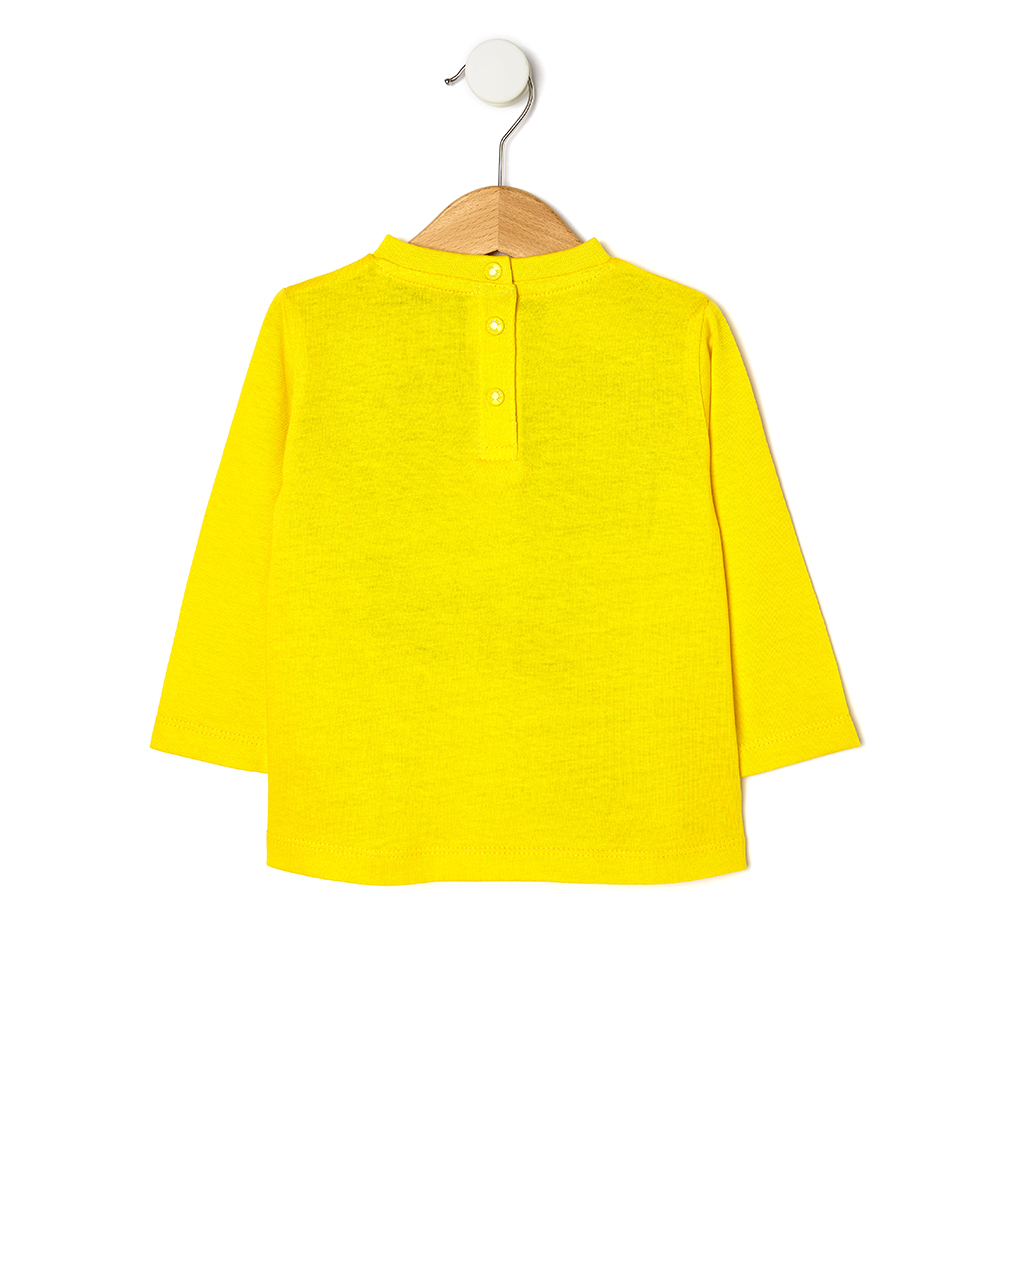 μπλούζα jersey κίτρινη για αγόρι - Prénatal